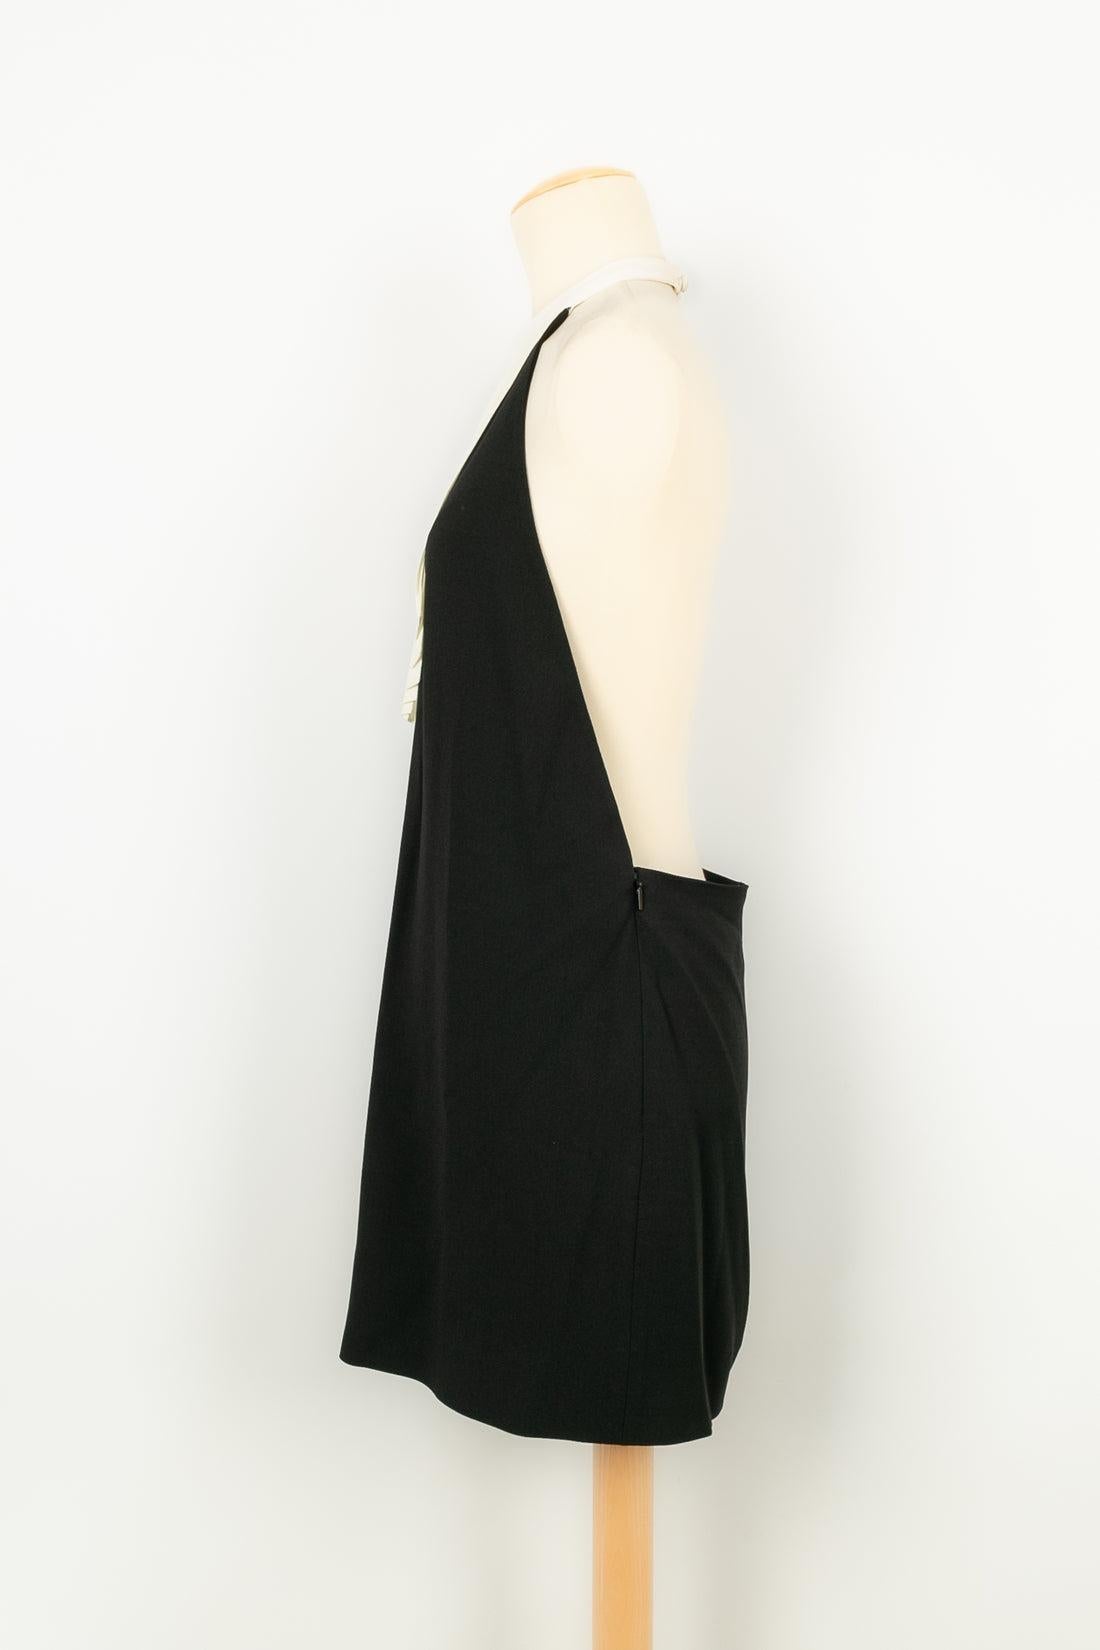 Women's Yves Saint Laurent Short Backless Black and White Dress For Sale